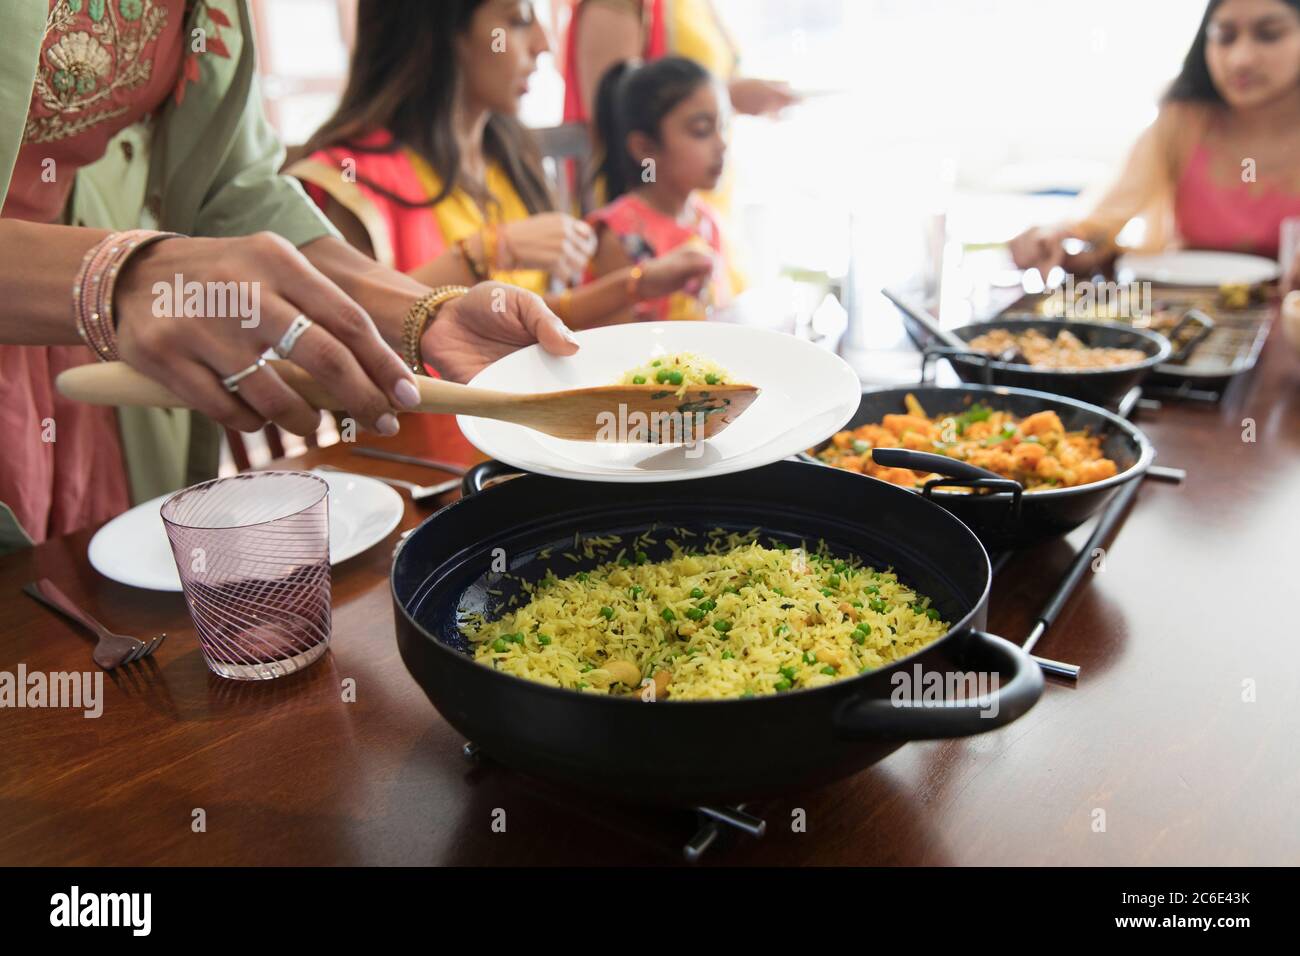 Indische Frauen in Saris servieren und essen Essen am Tisch Stockfoto